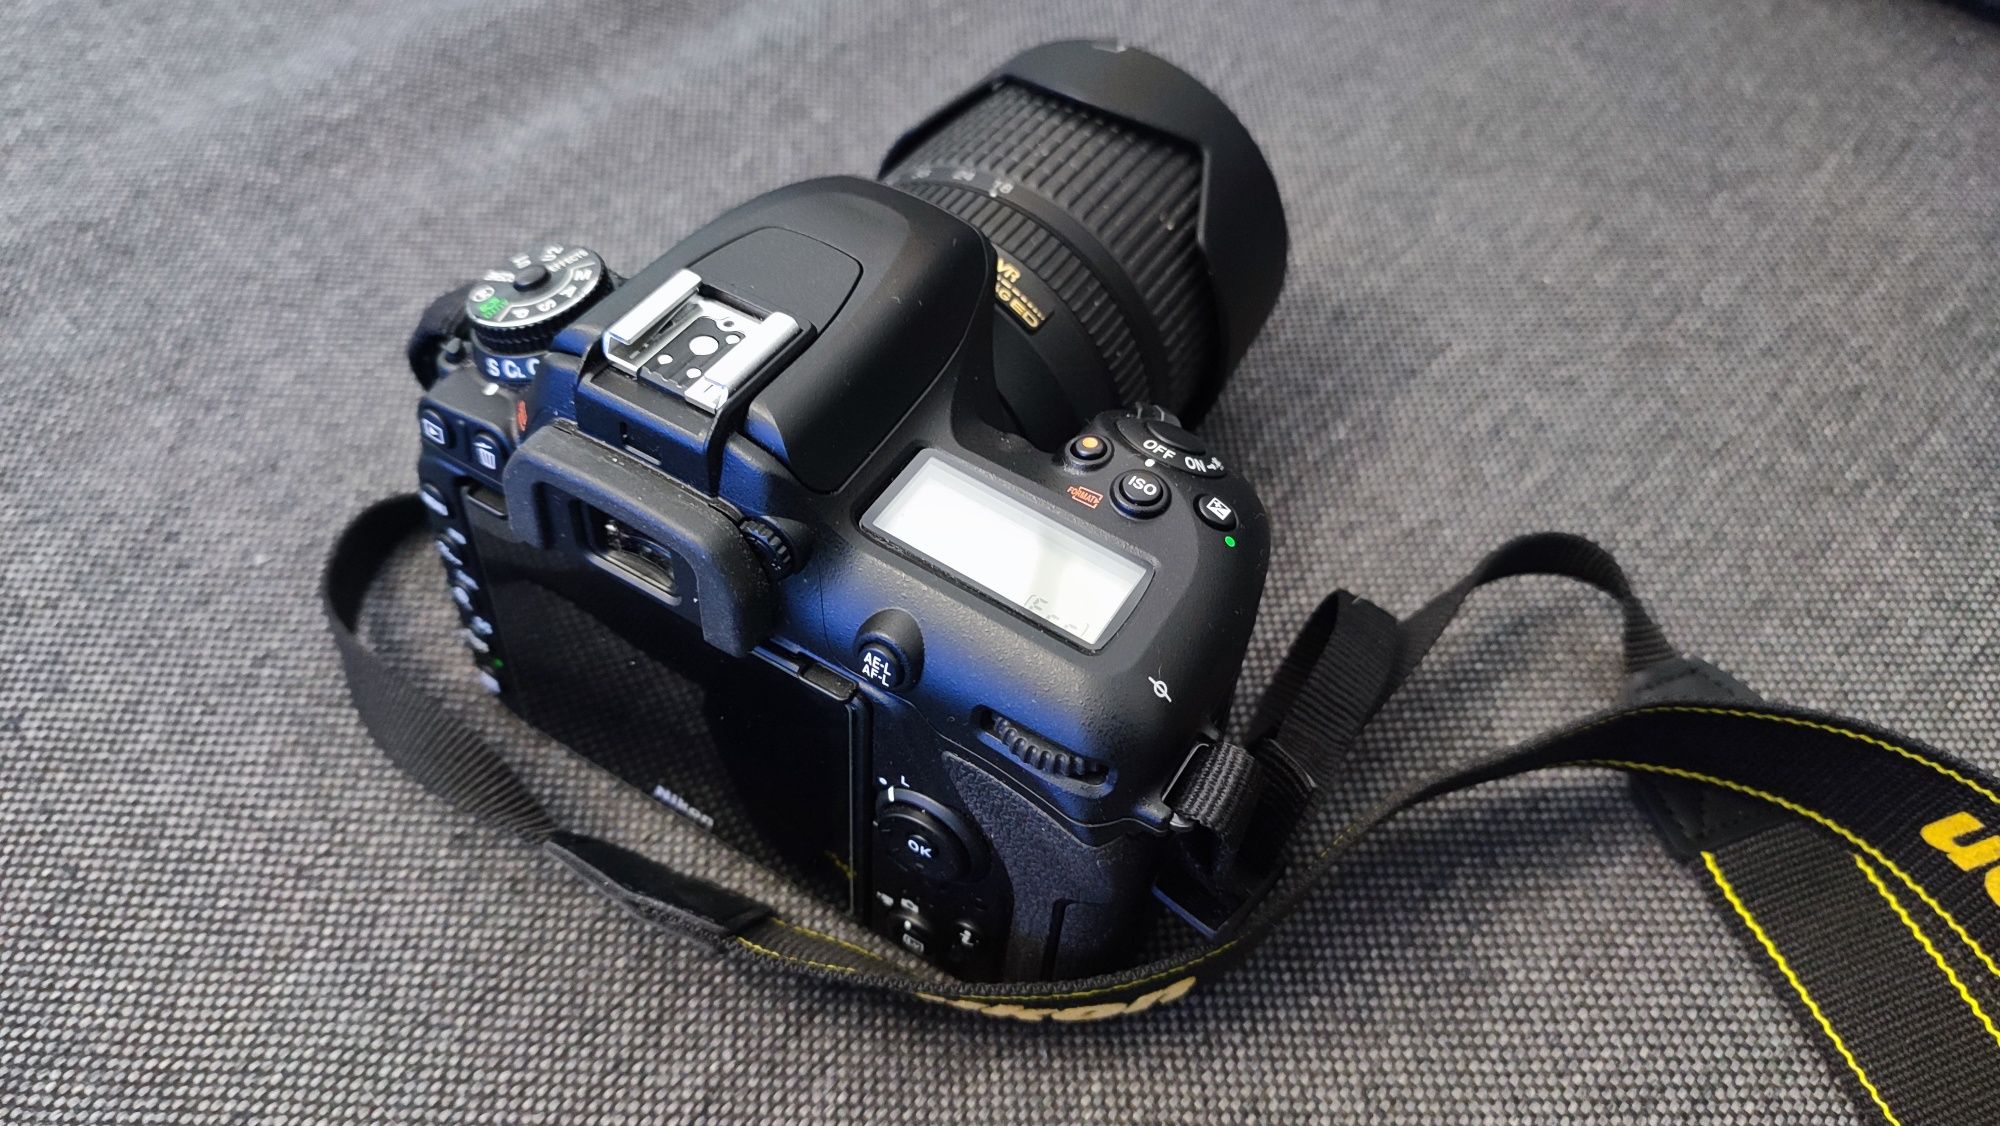 Nowy Nikon D7500 z obiektywem Nikkor 18-140mm, przebieg 1516 zdjęć